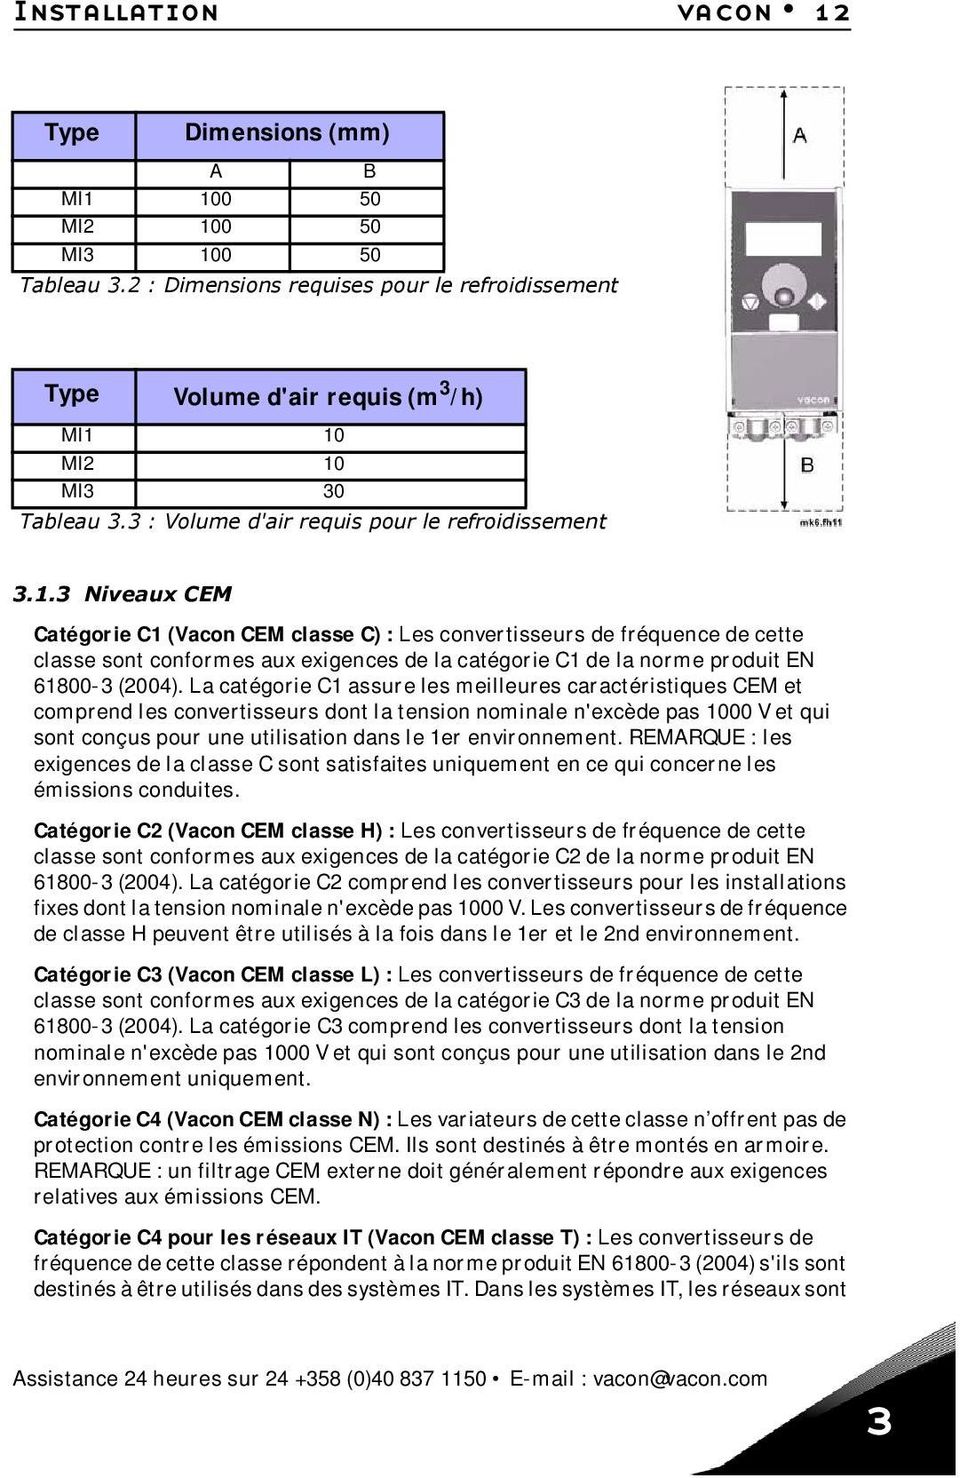 10 MI2 10 MI3 30 Tableau 3.3 : Volume d'air requis pour le refroidissement 3.1.3 Niveaux CEM Catégorie C1 (Vacon CEM classe C) : Les convertisseurs de fréquence de cette classe sont conformes aux exigences de la catégorie C1 de la norme produit EN 61800-3 (2004).